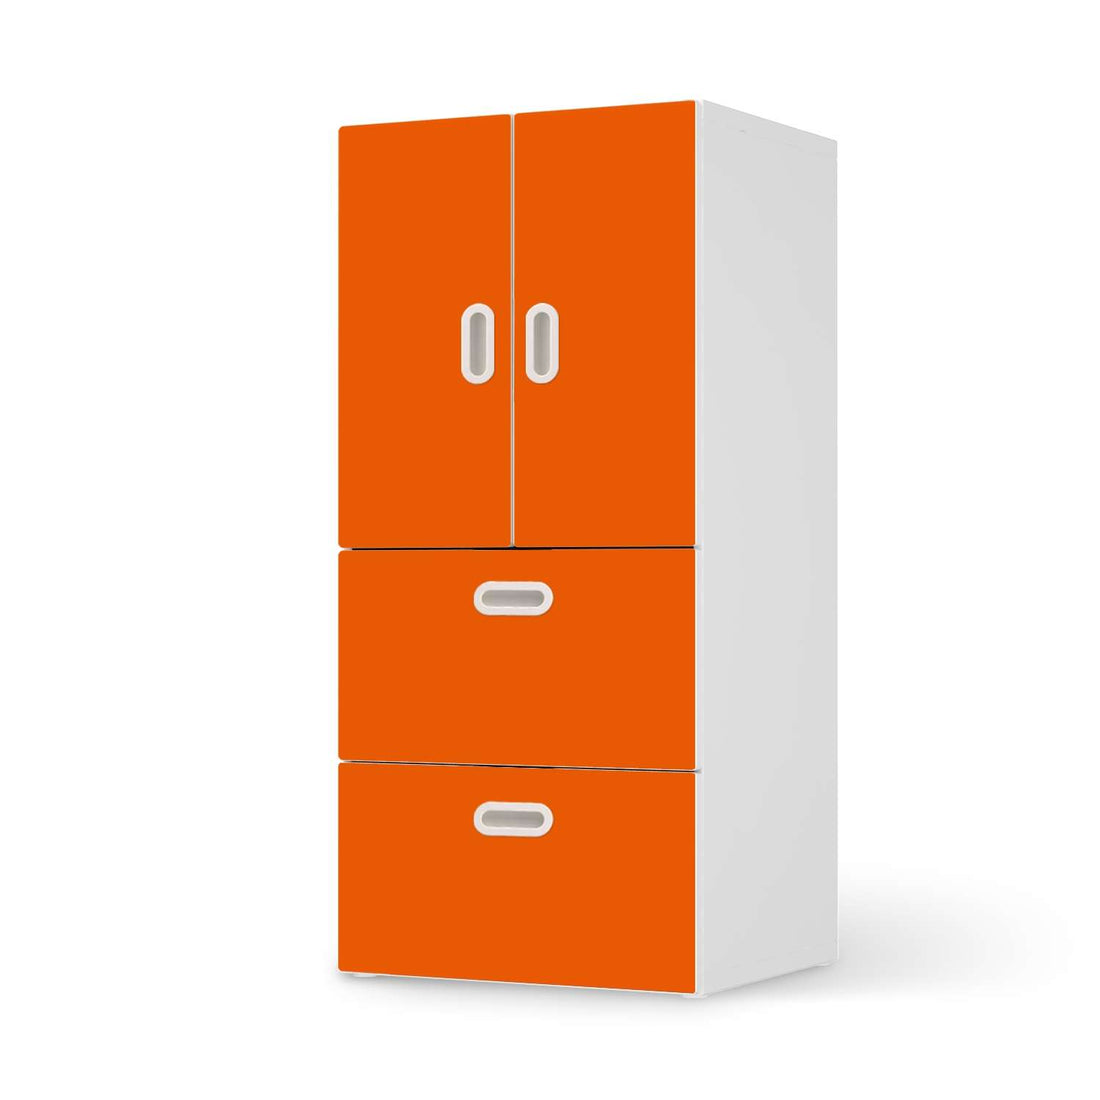 Möbelfolie Orange Dark - IKEA Stuva / Fritids kombiniert - 2 Schubladen und 2 kleine Türen  - weiss